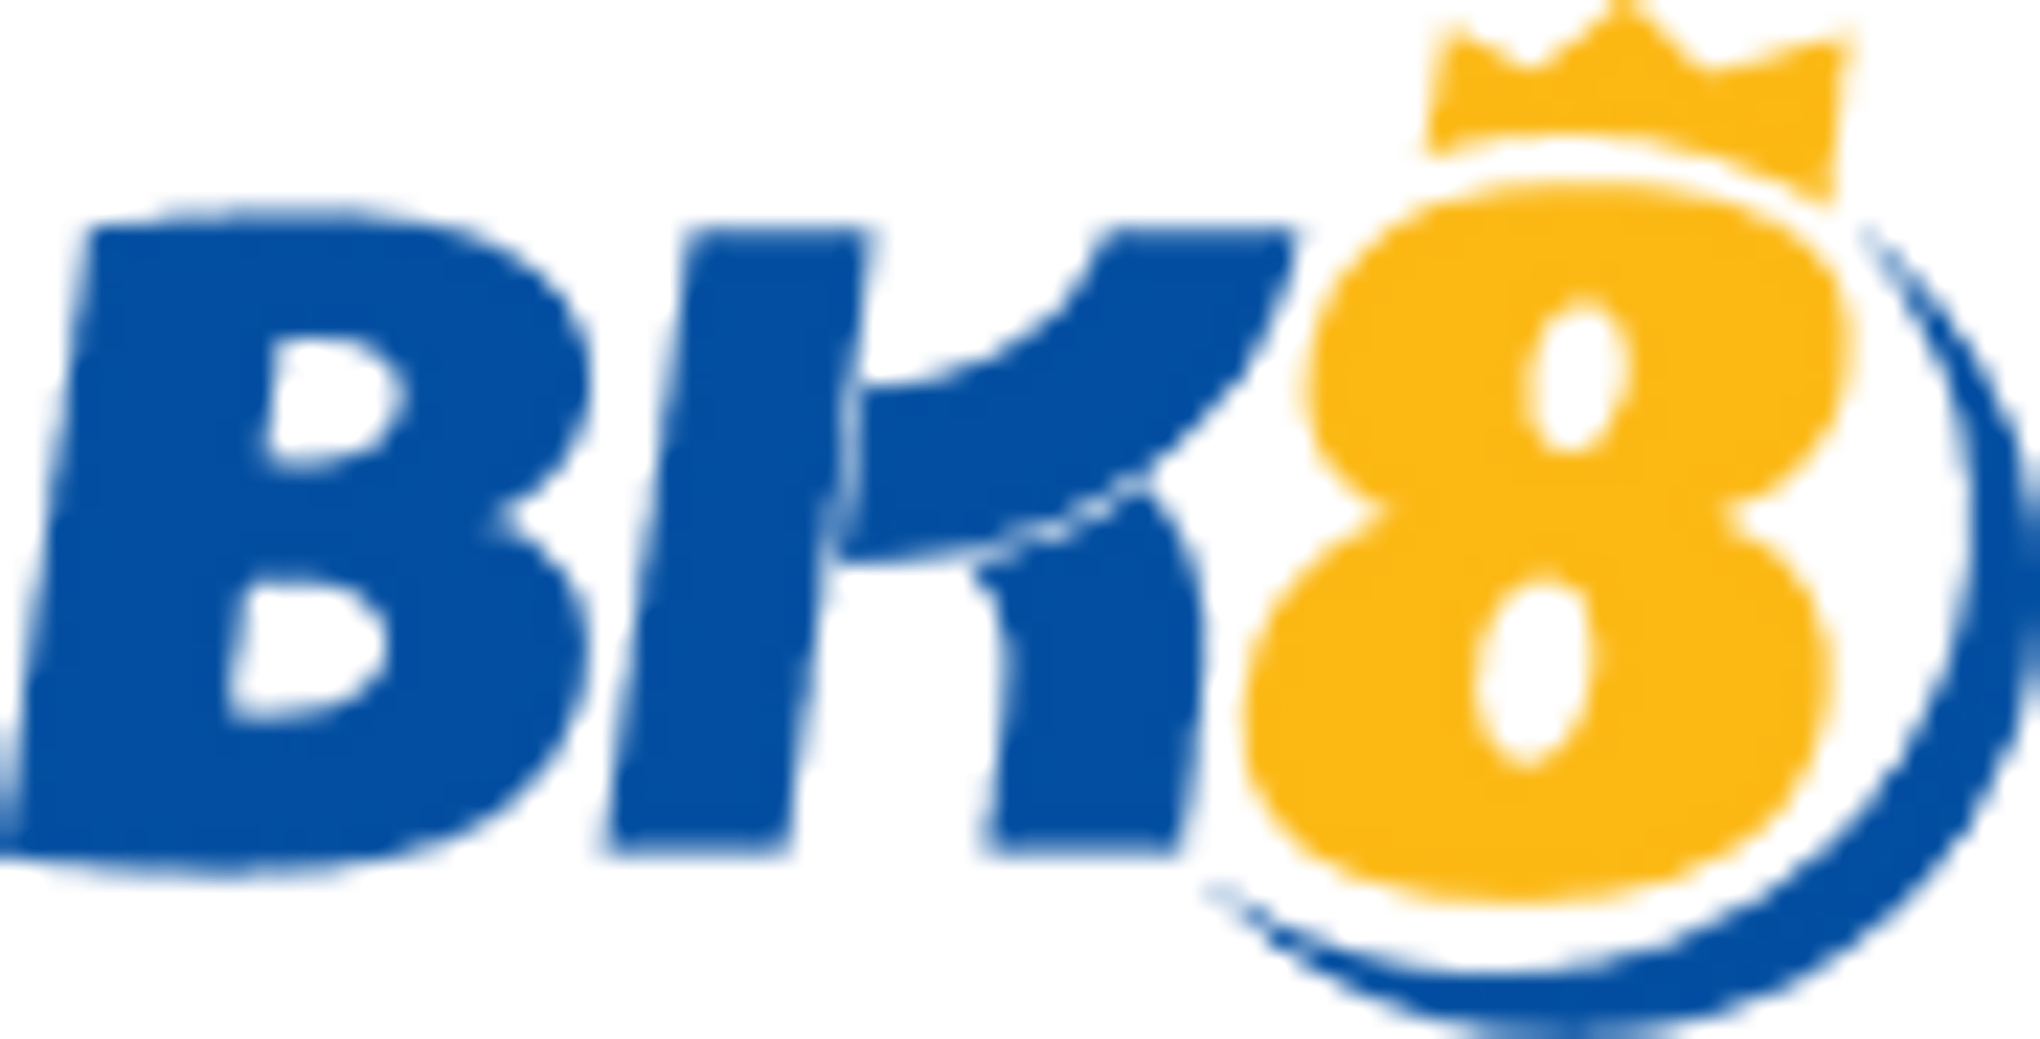 bk8 logo